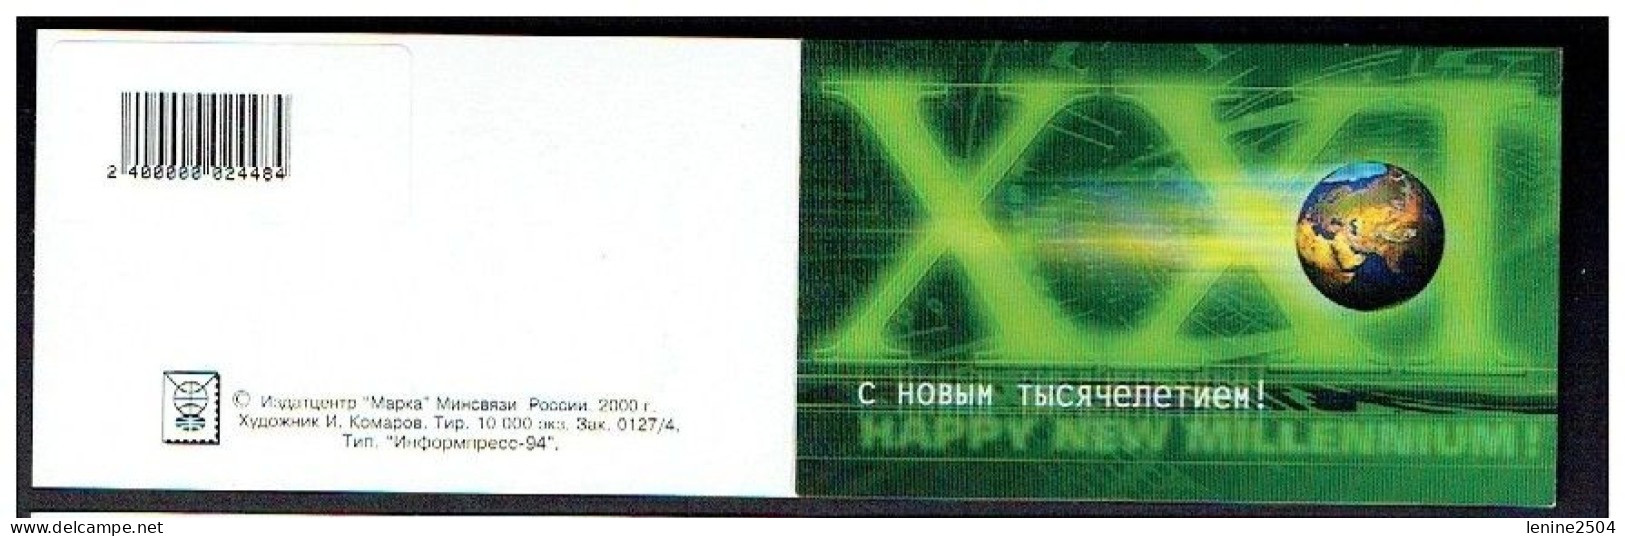 Russie 2000 Yvert N° 6523 ** Emission 1er Jour Carnet Prestige Folder Booklet. Nouveau Millénaire - Unused Stamps